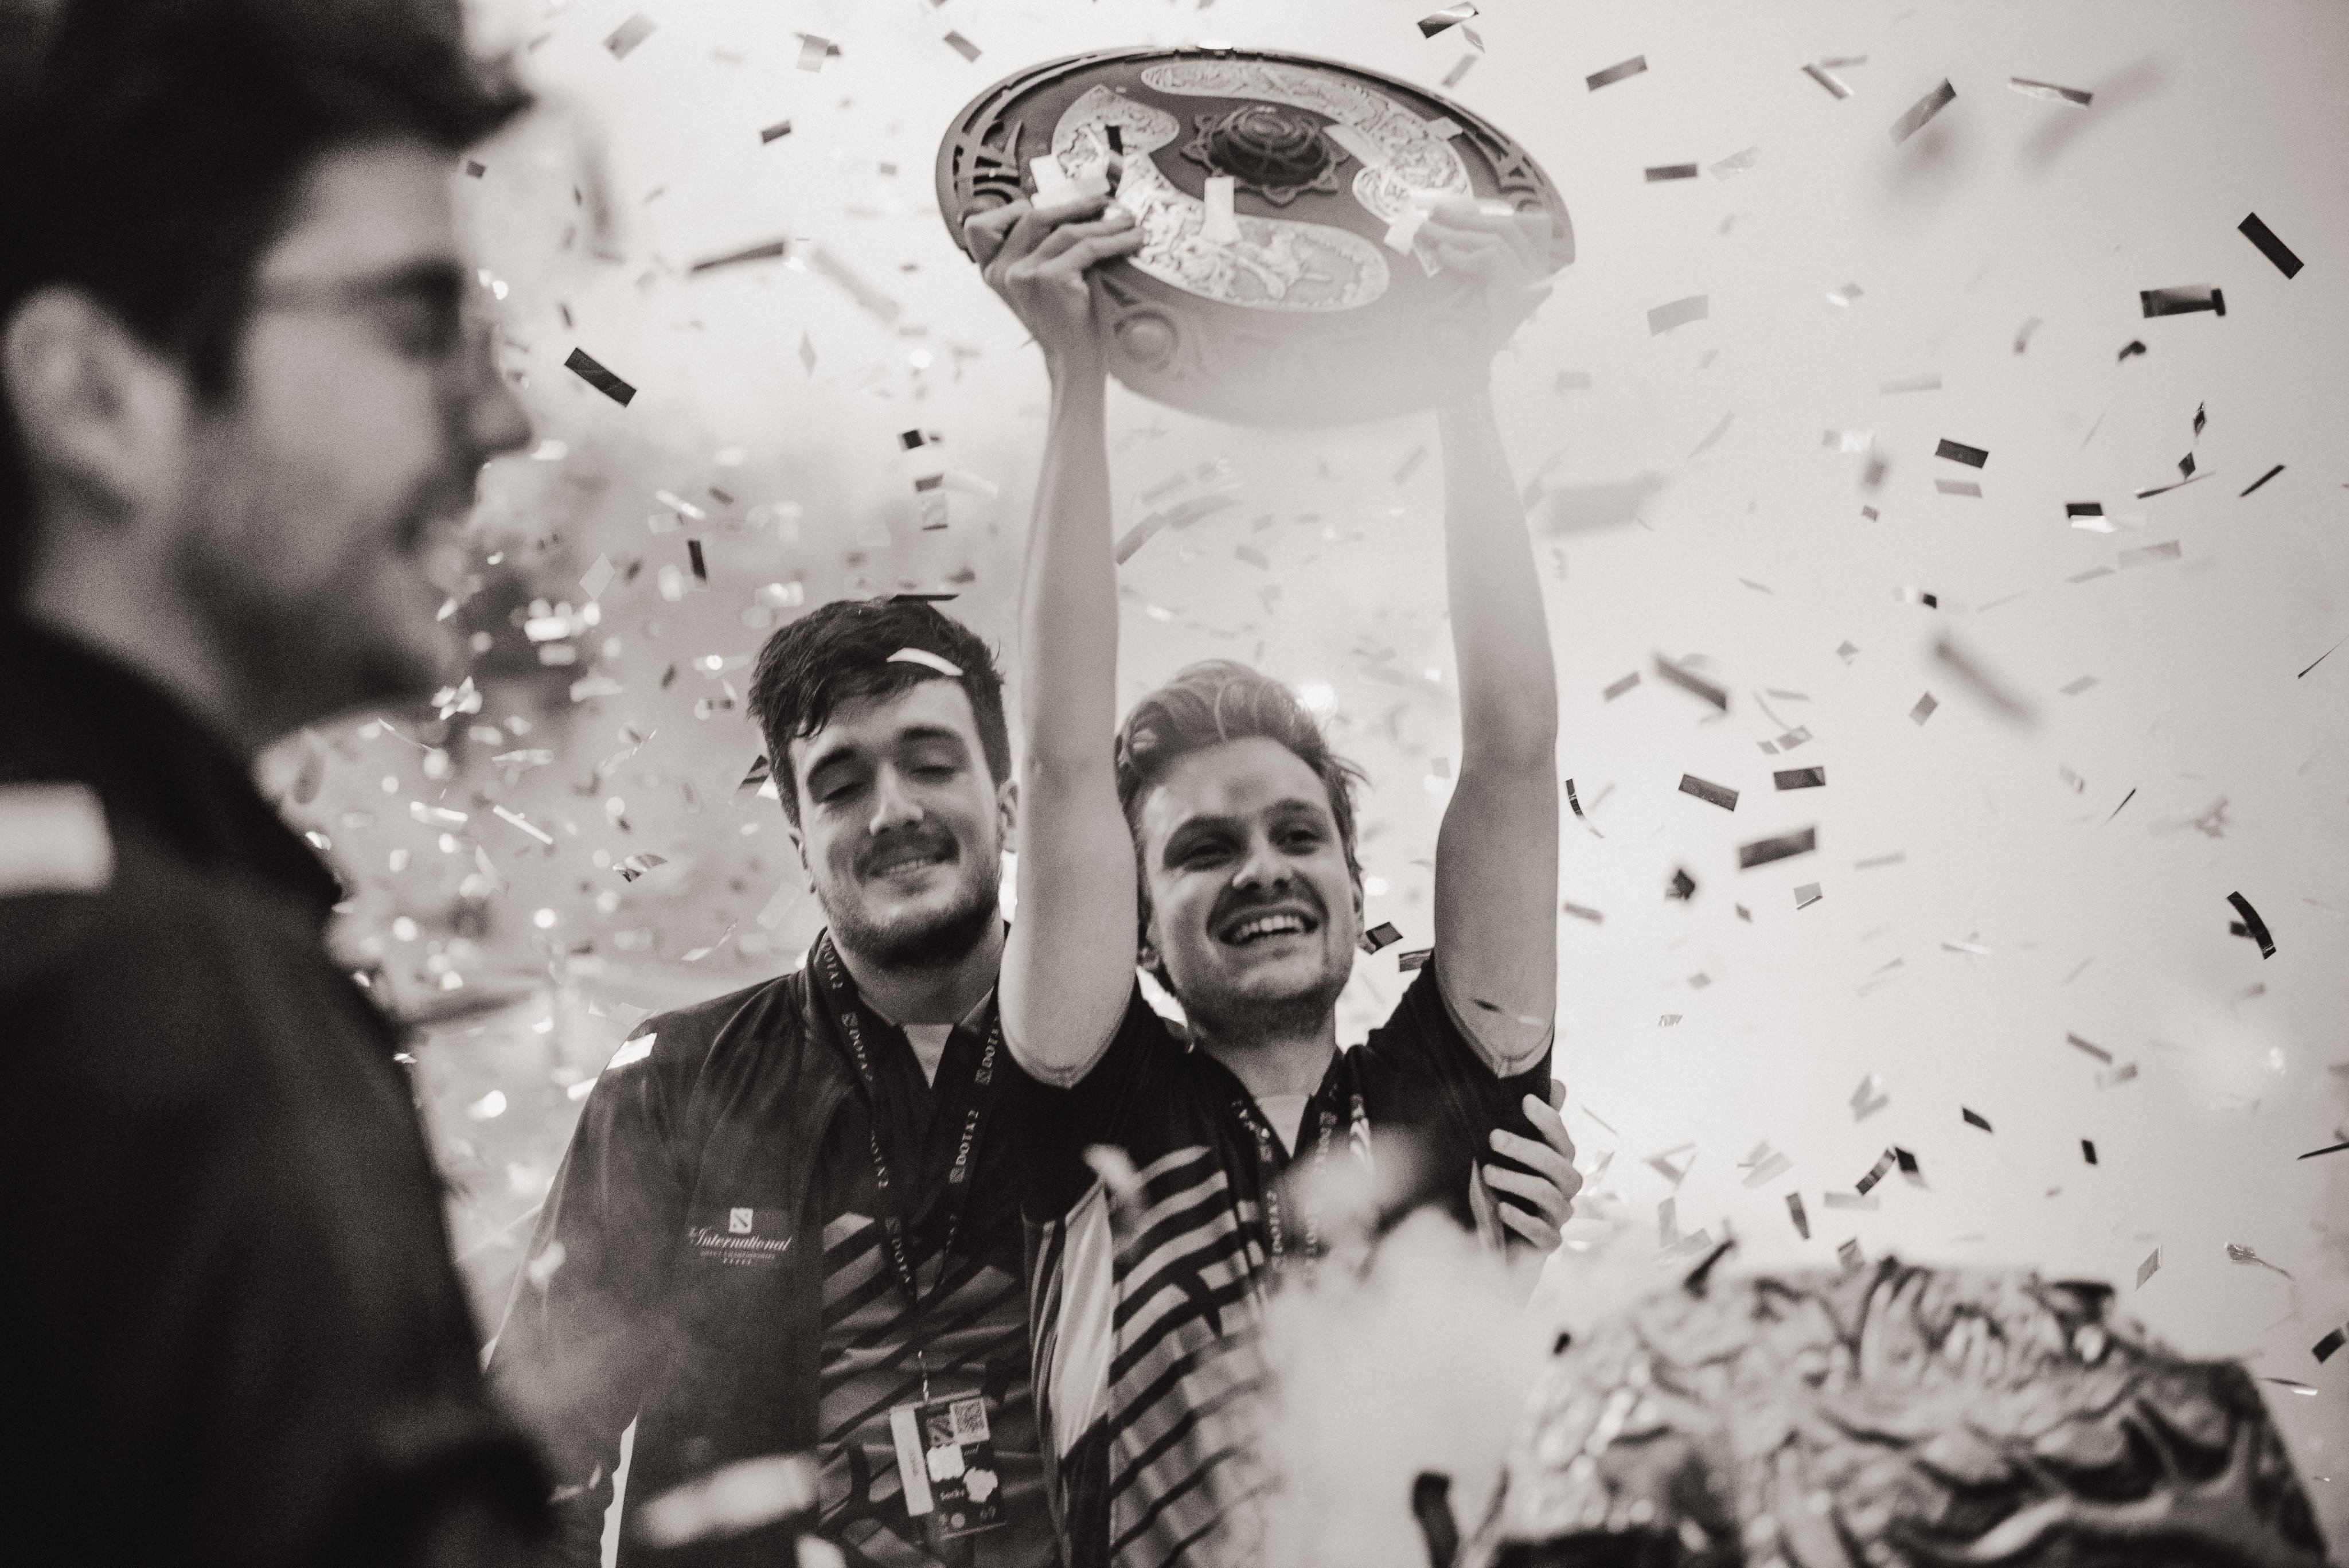 OG Gaming – последняя на сегодня команда, выигравшая The International (в 2019 году). Изображение: The International